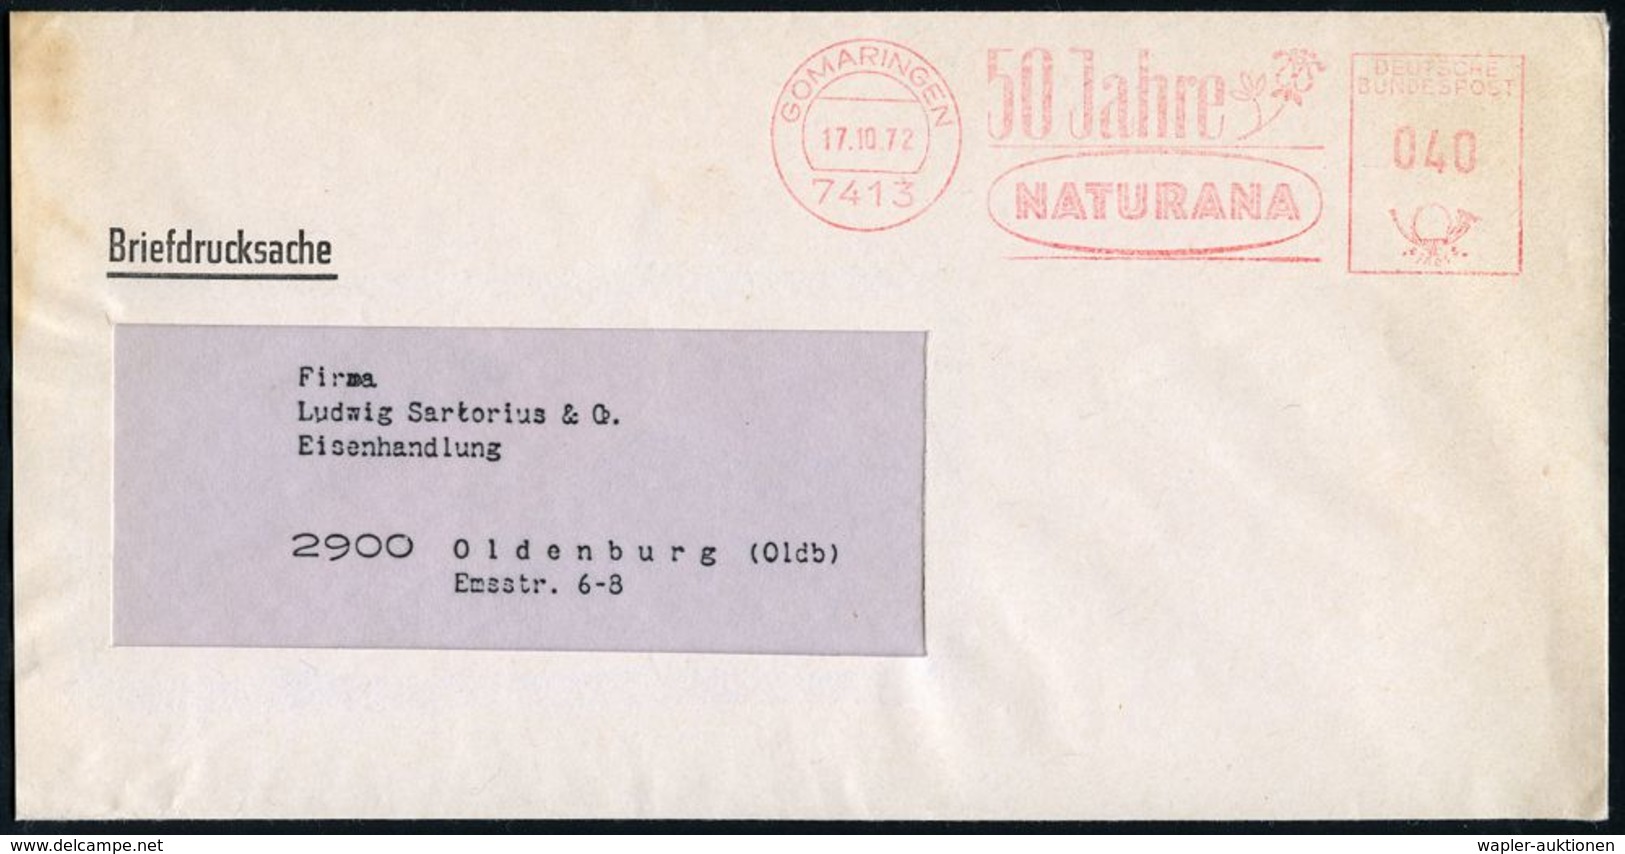 KOSMETIK / PARFÜM : 7413 GOMARINGEN/ 50 Jahre/ NATURANA 1972 (17.10.) Seltener Jubil.-AFS = Heilpflanze (schwaches Fleck - Farmacia